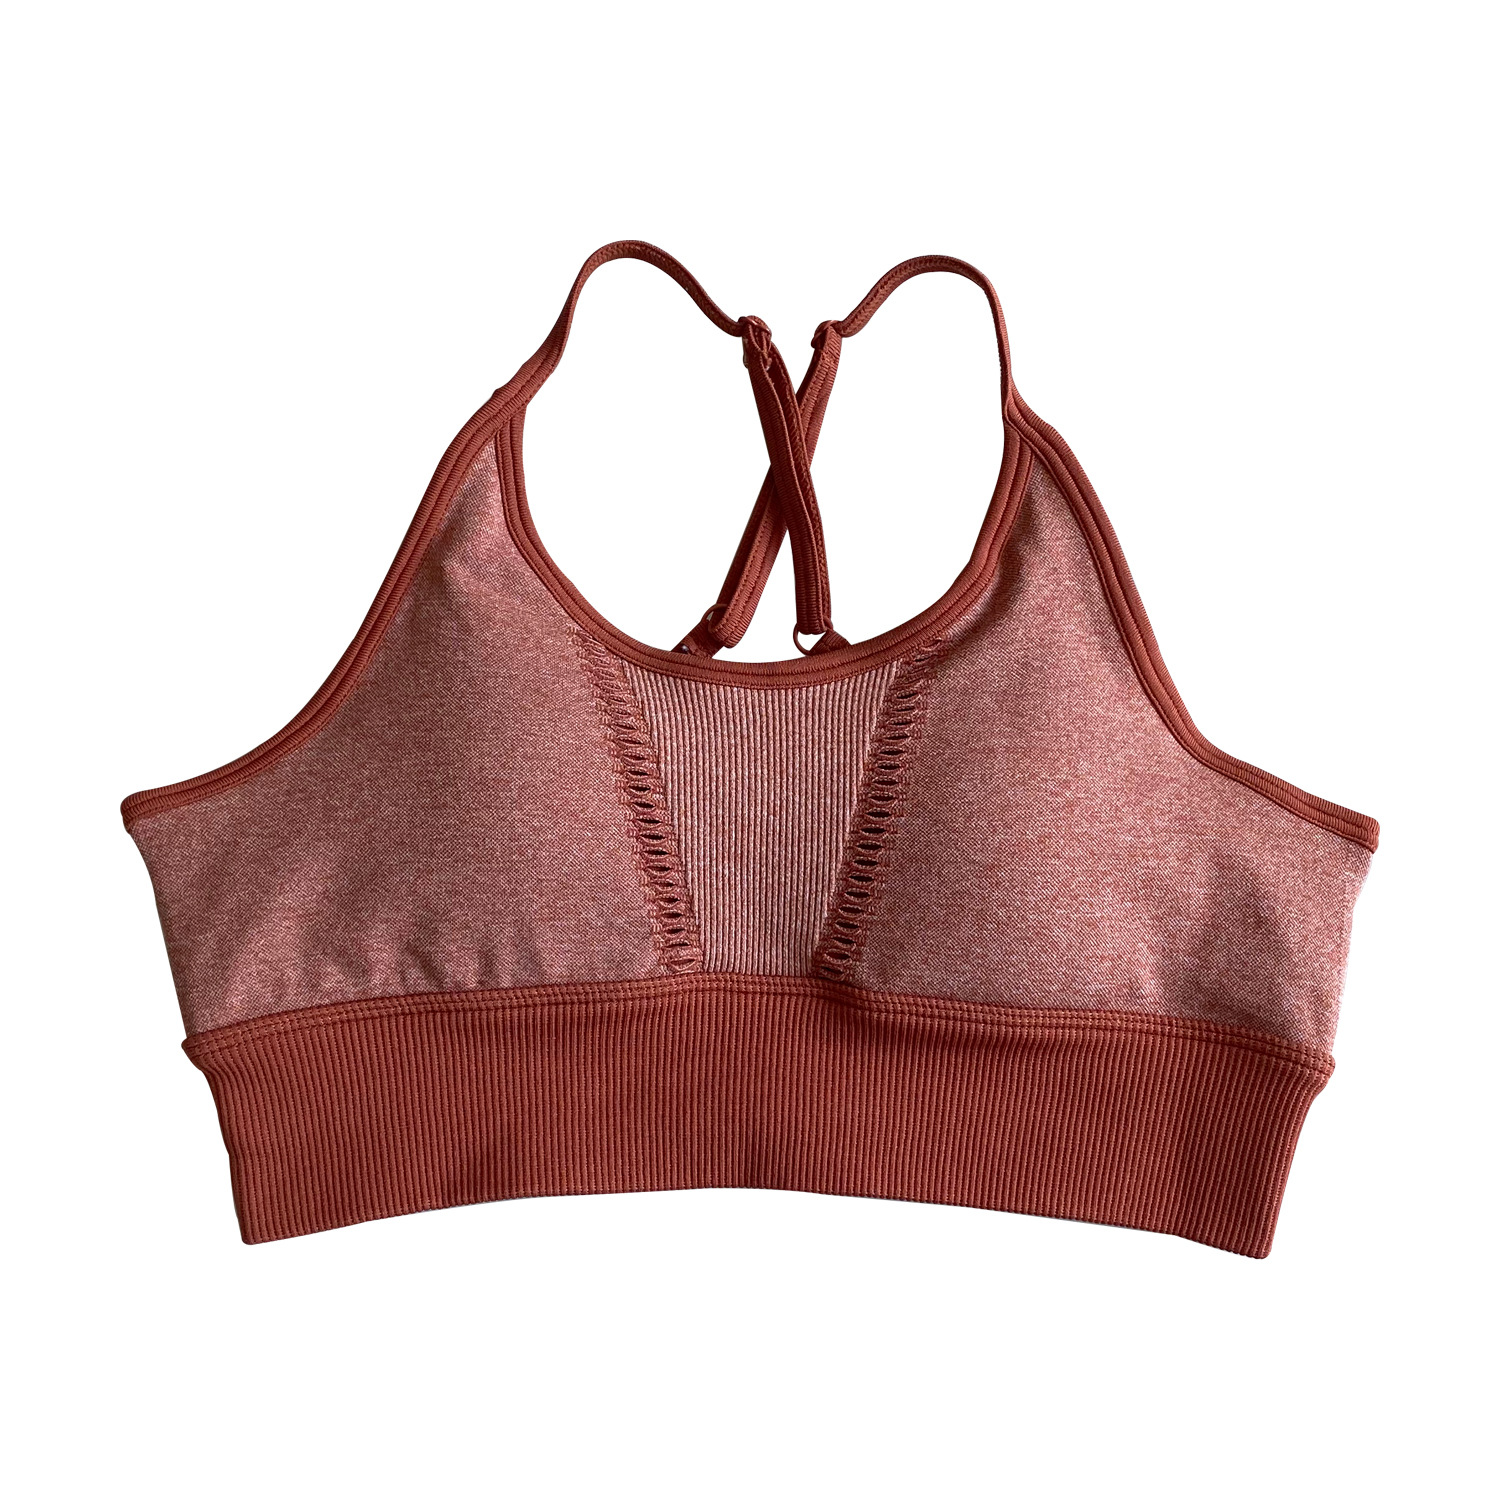 knit sports bra vest set nihaostyle clothing wholesale NSSYZ67856